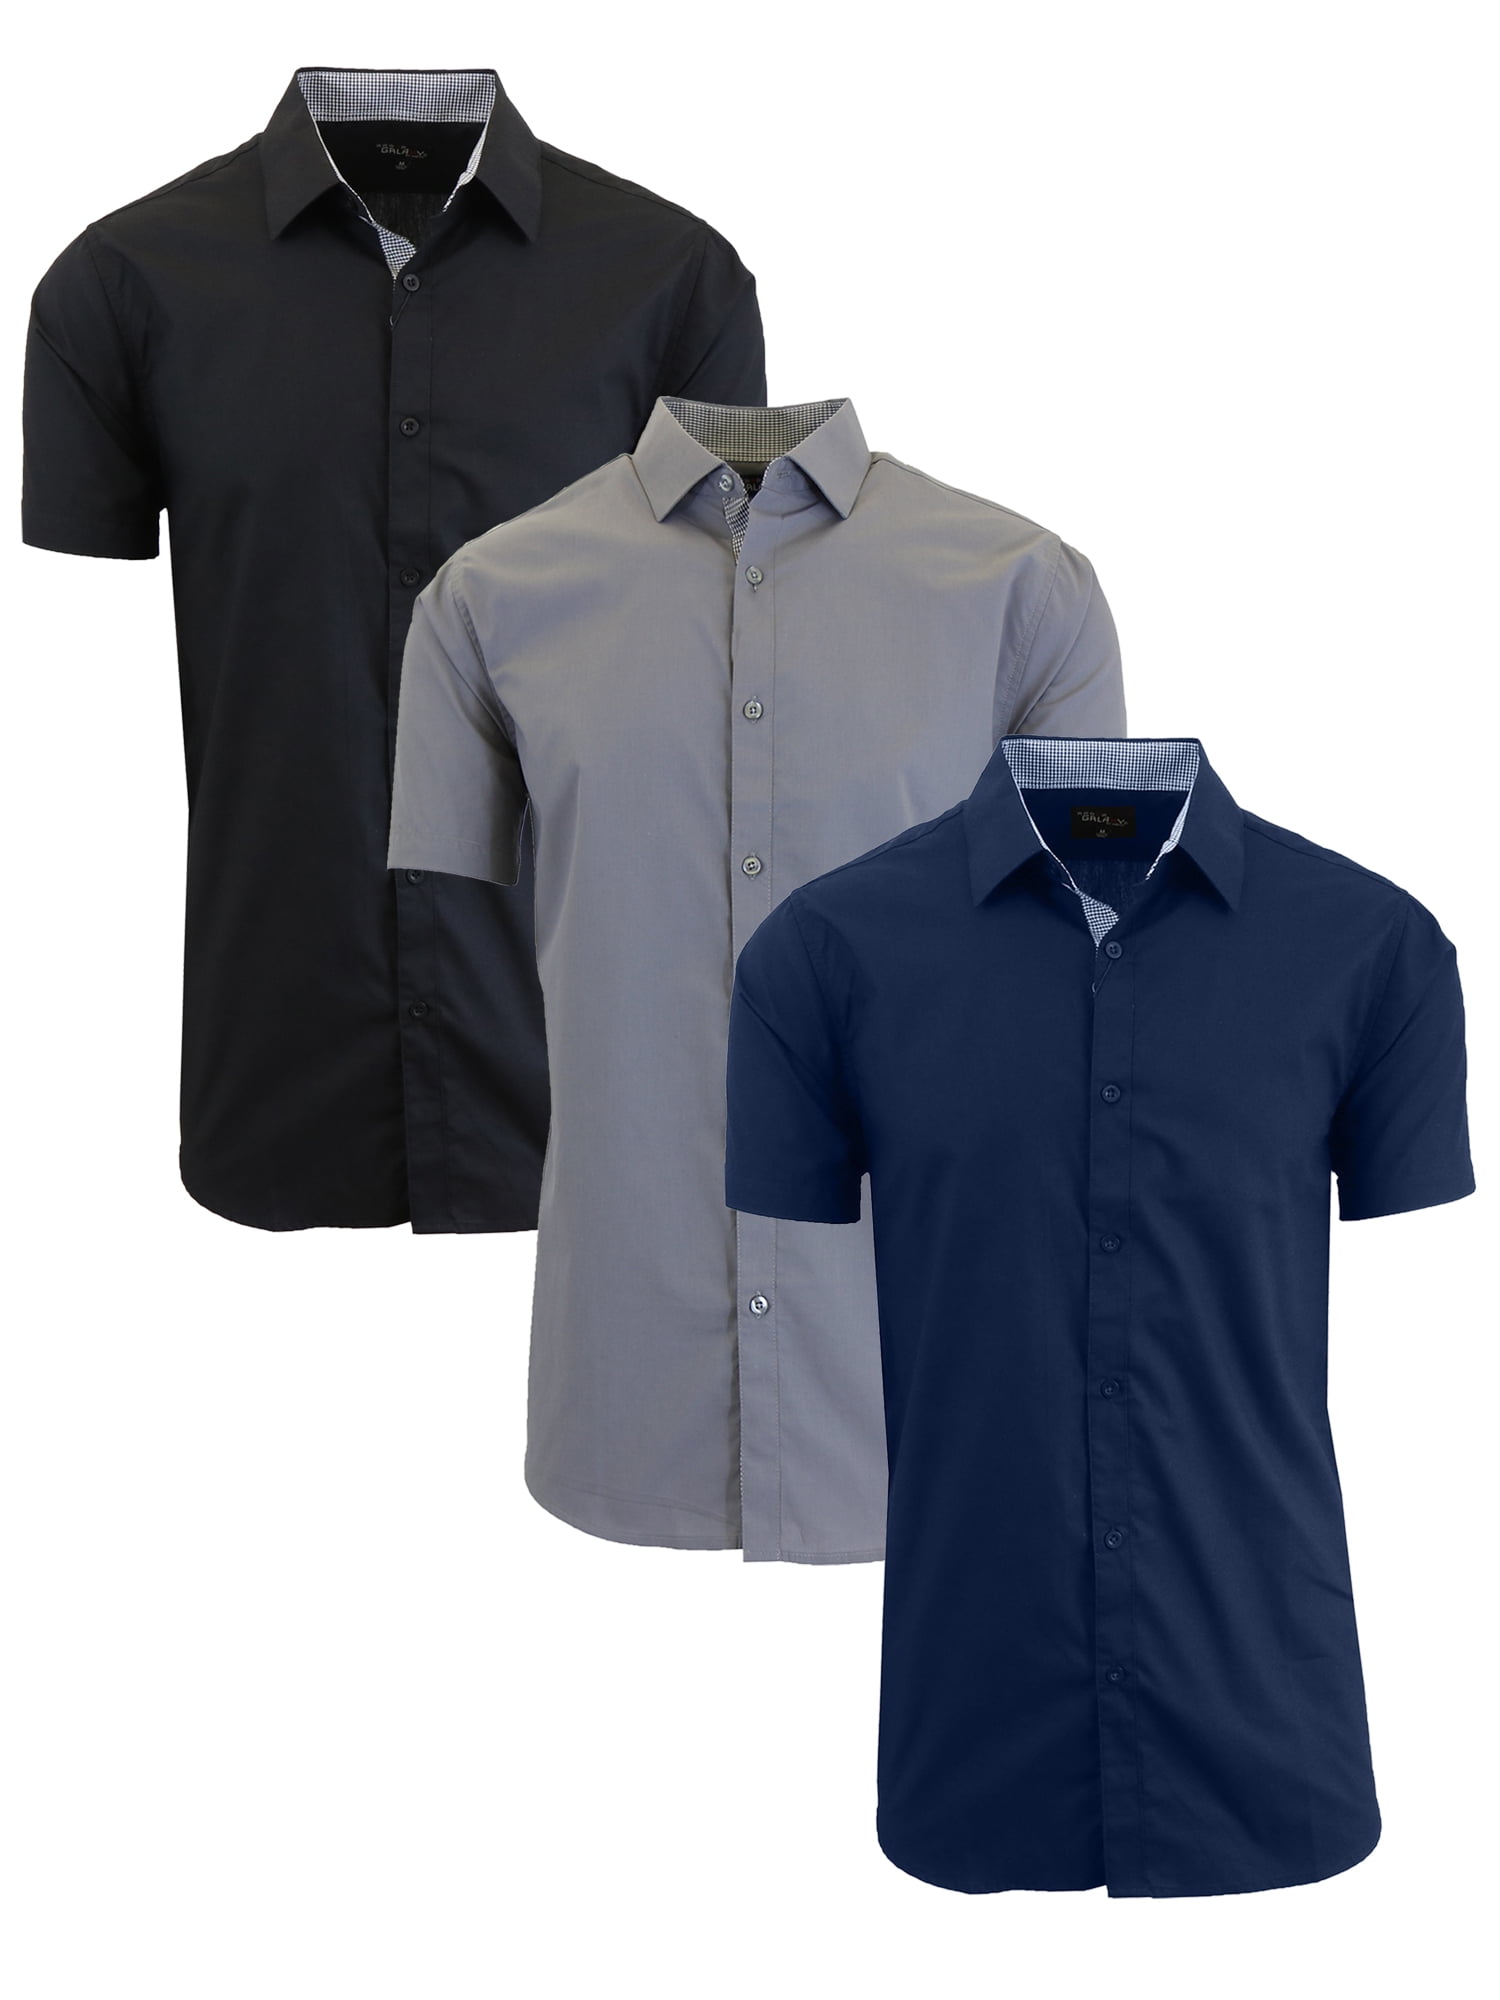 Men's 3-Pack Short Sleeve Dress Shirts (S-5XL) - Walmart.com